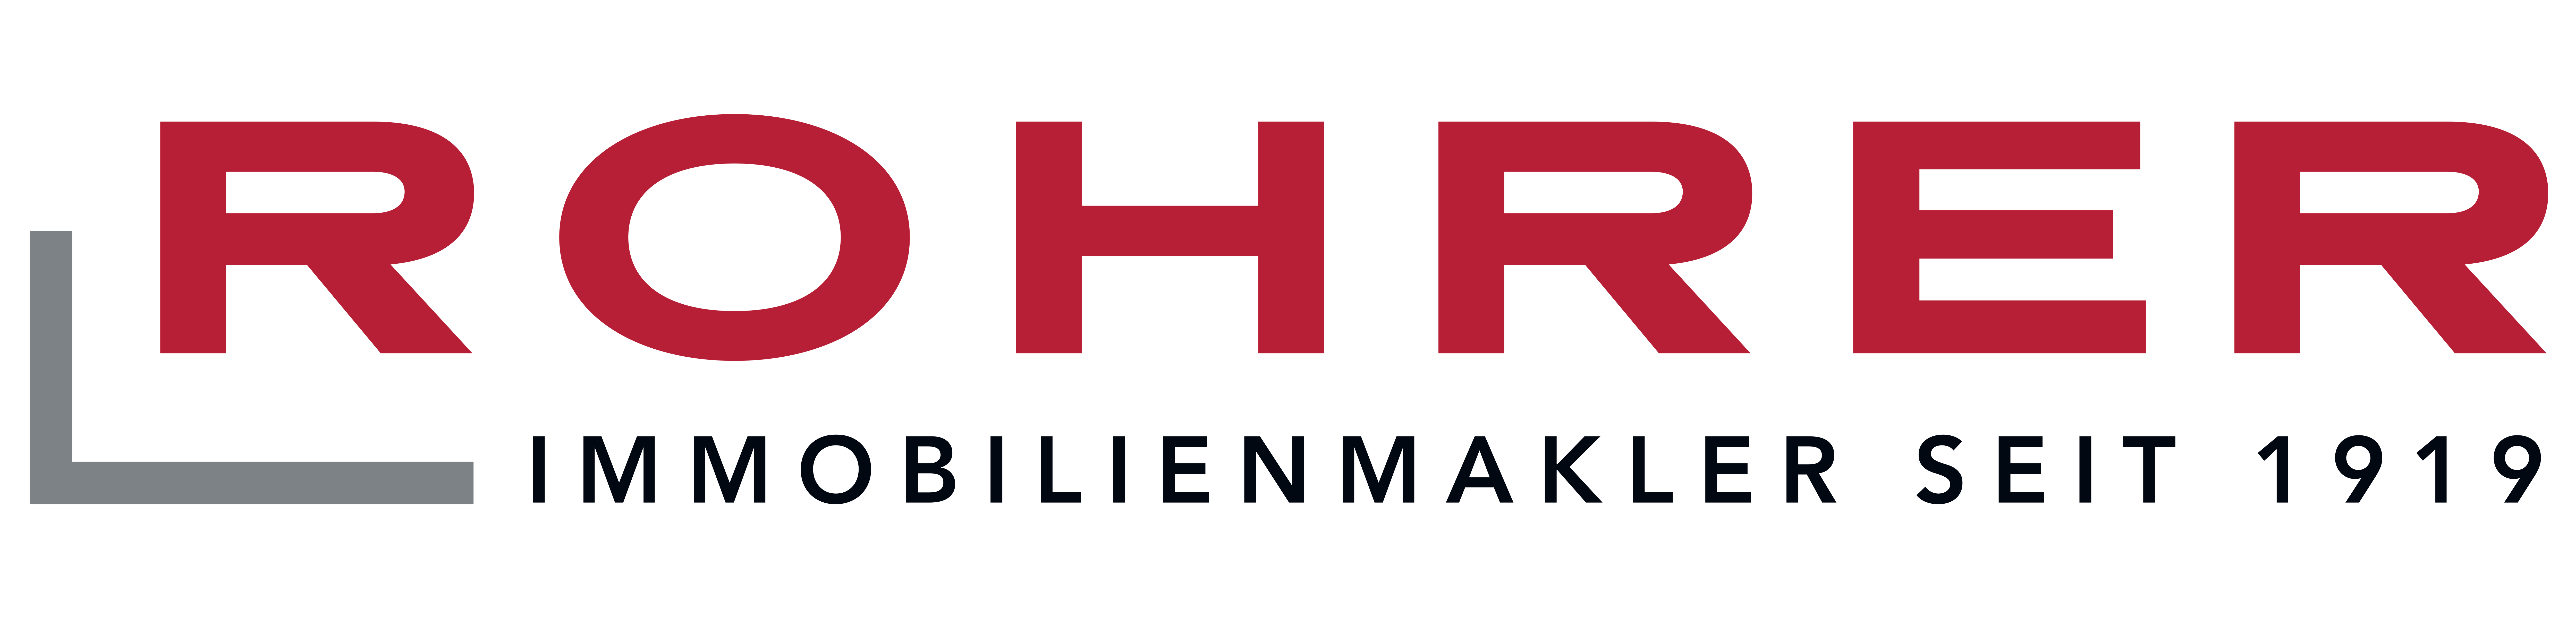 Logo Rohrer Immobilien GmbH